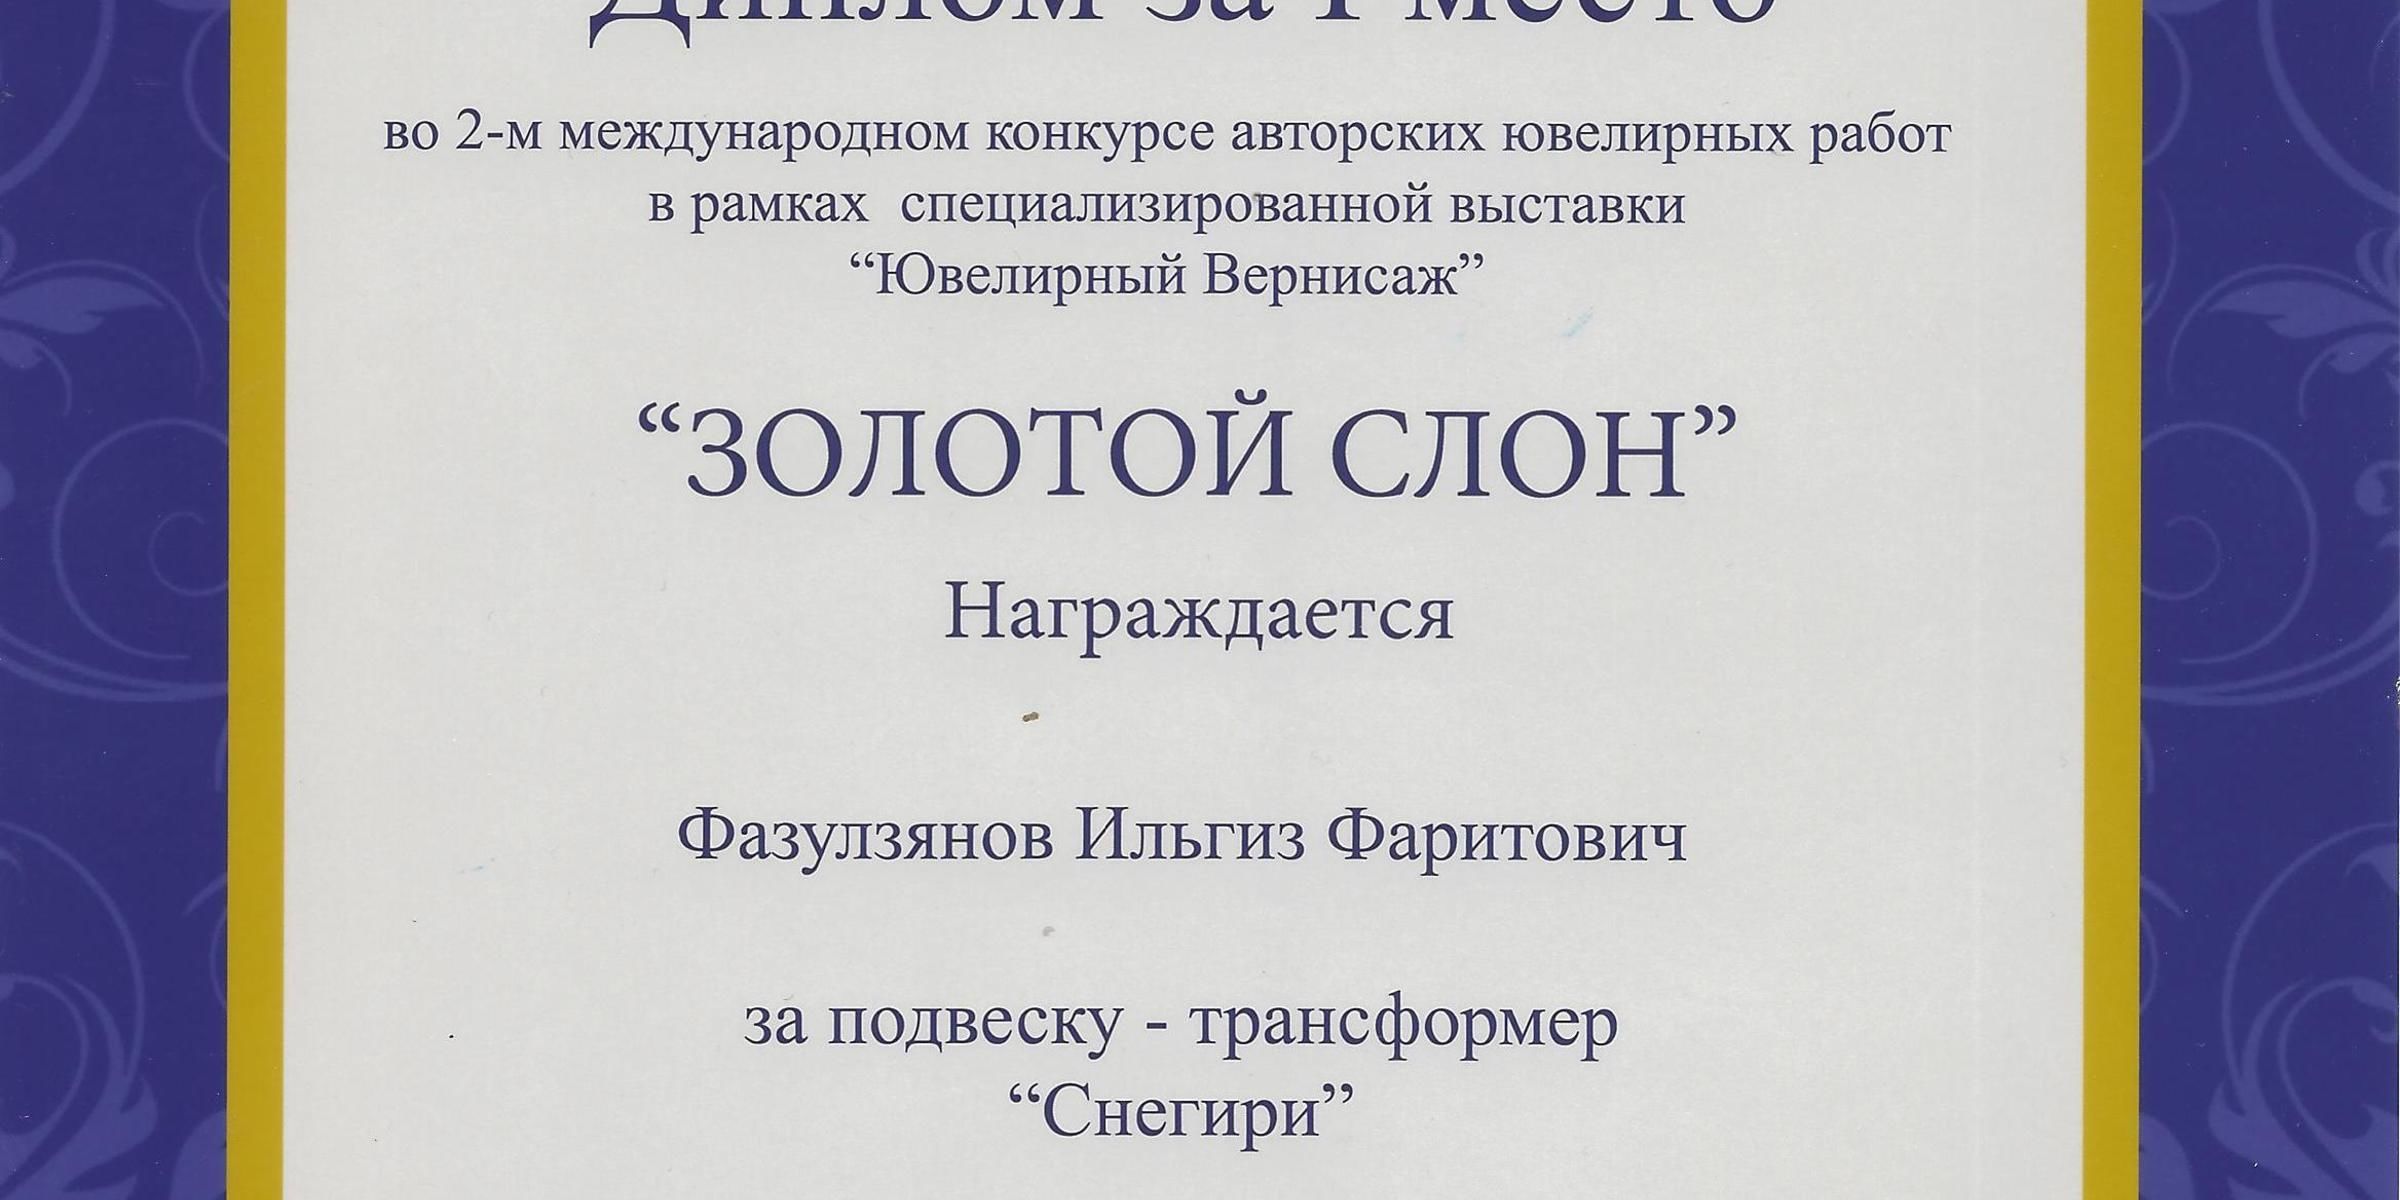 Выставка "Ювелирный вернисаж"(Москва)